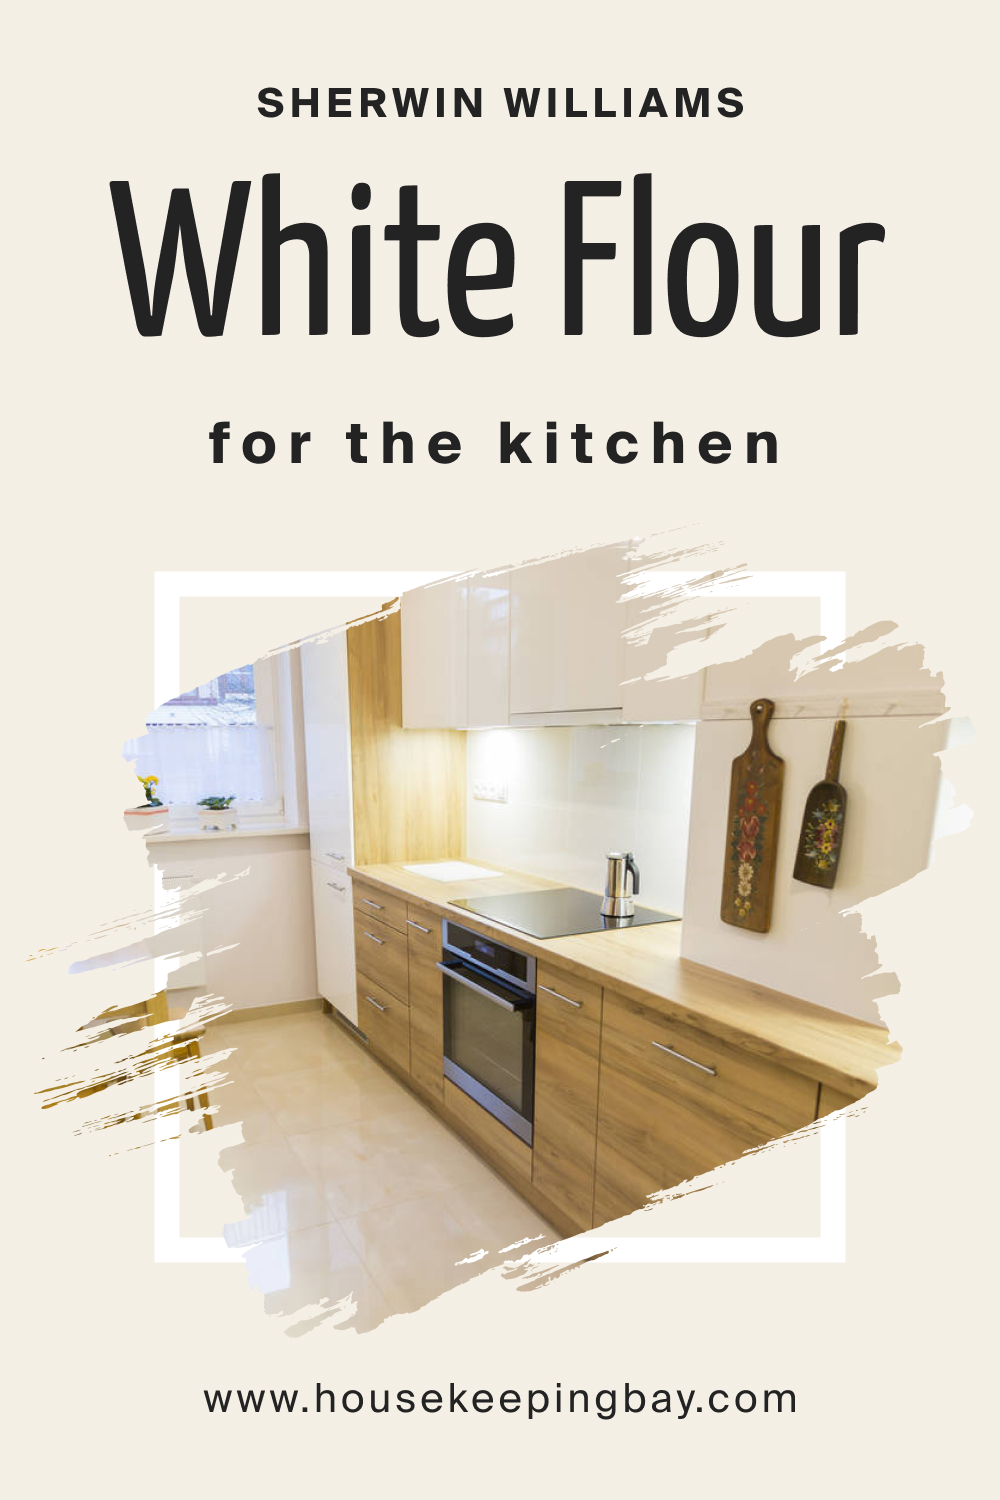 Sherwin Williams. SW White Flour For the Kitchen